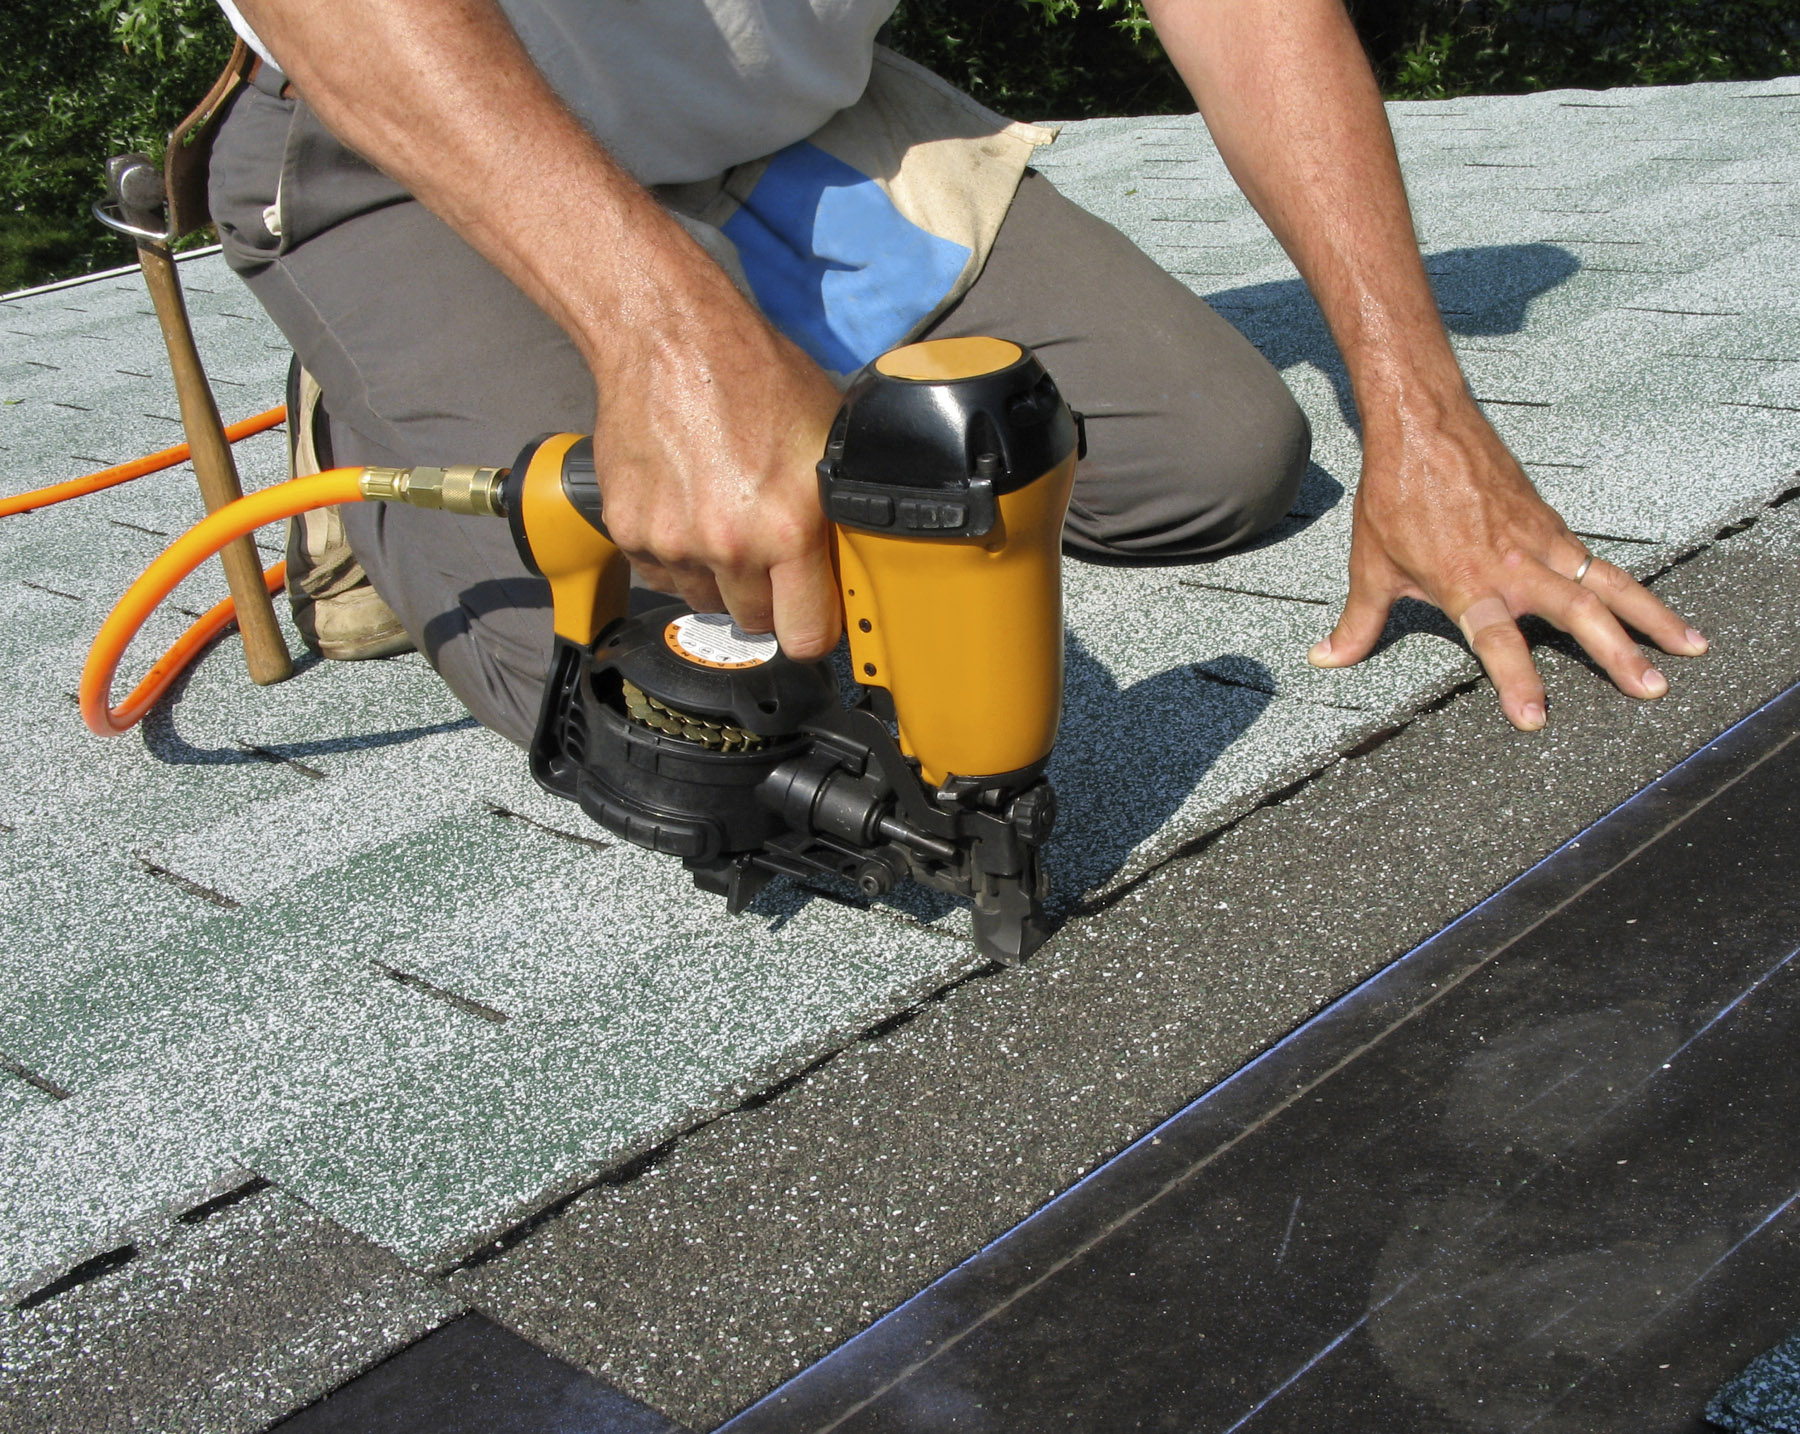 Roofing professional using a nail gun to nail down asphalt shingles.